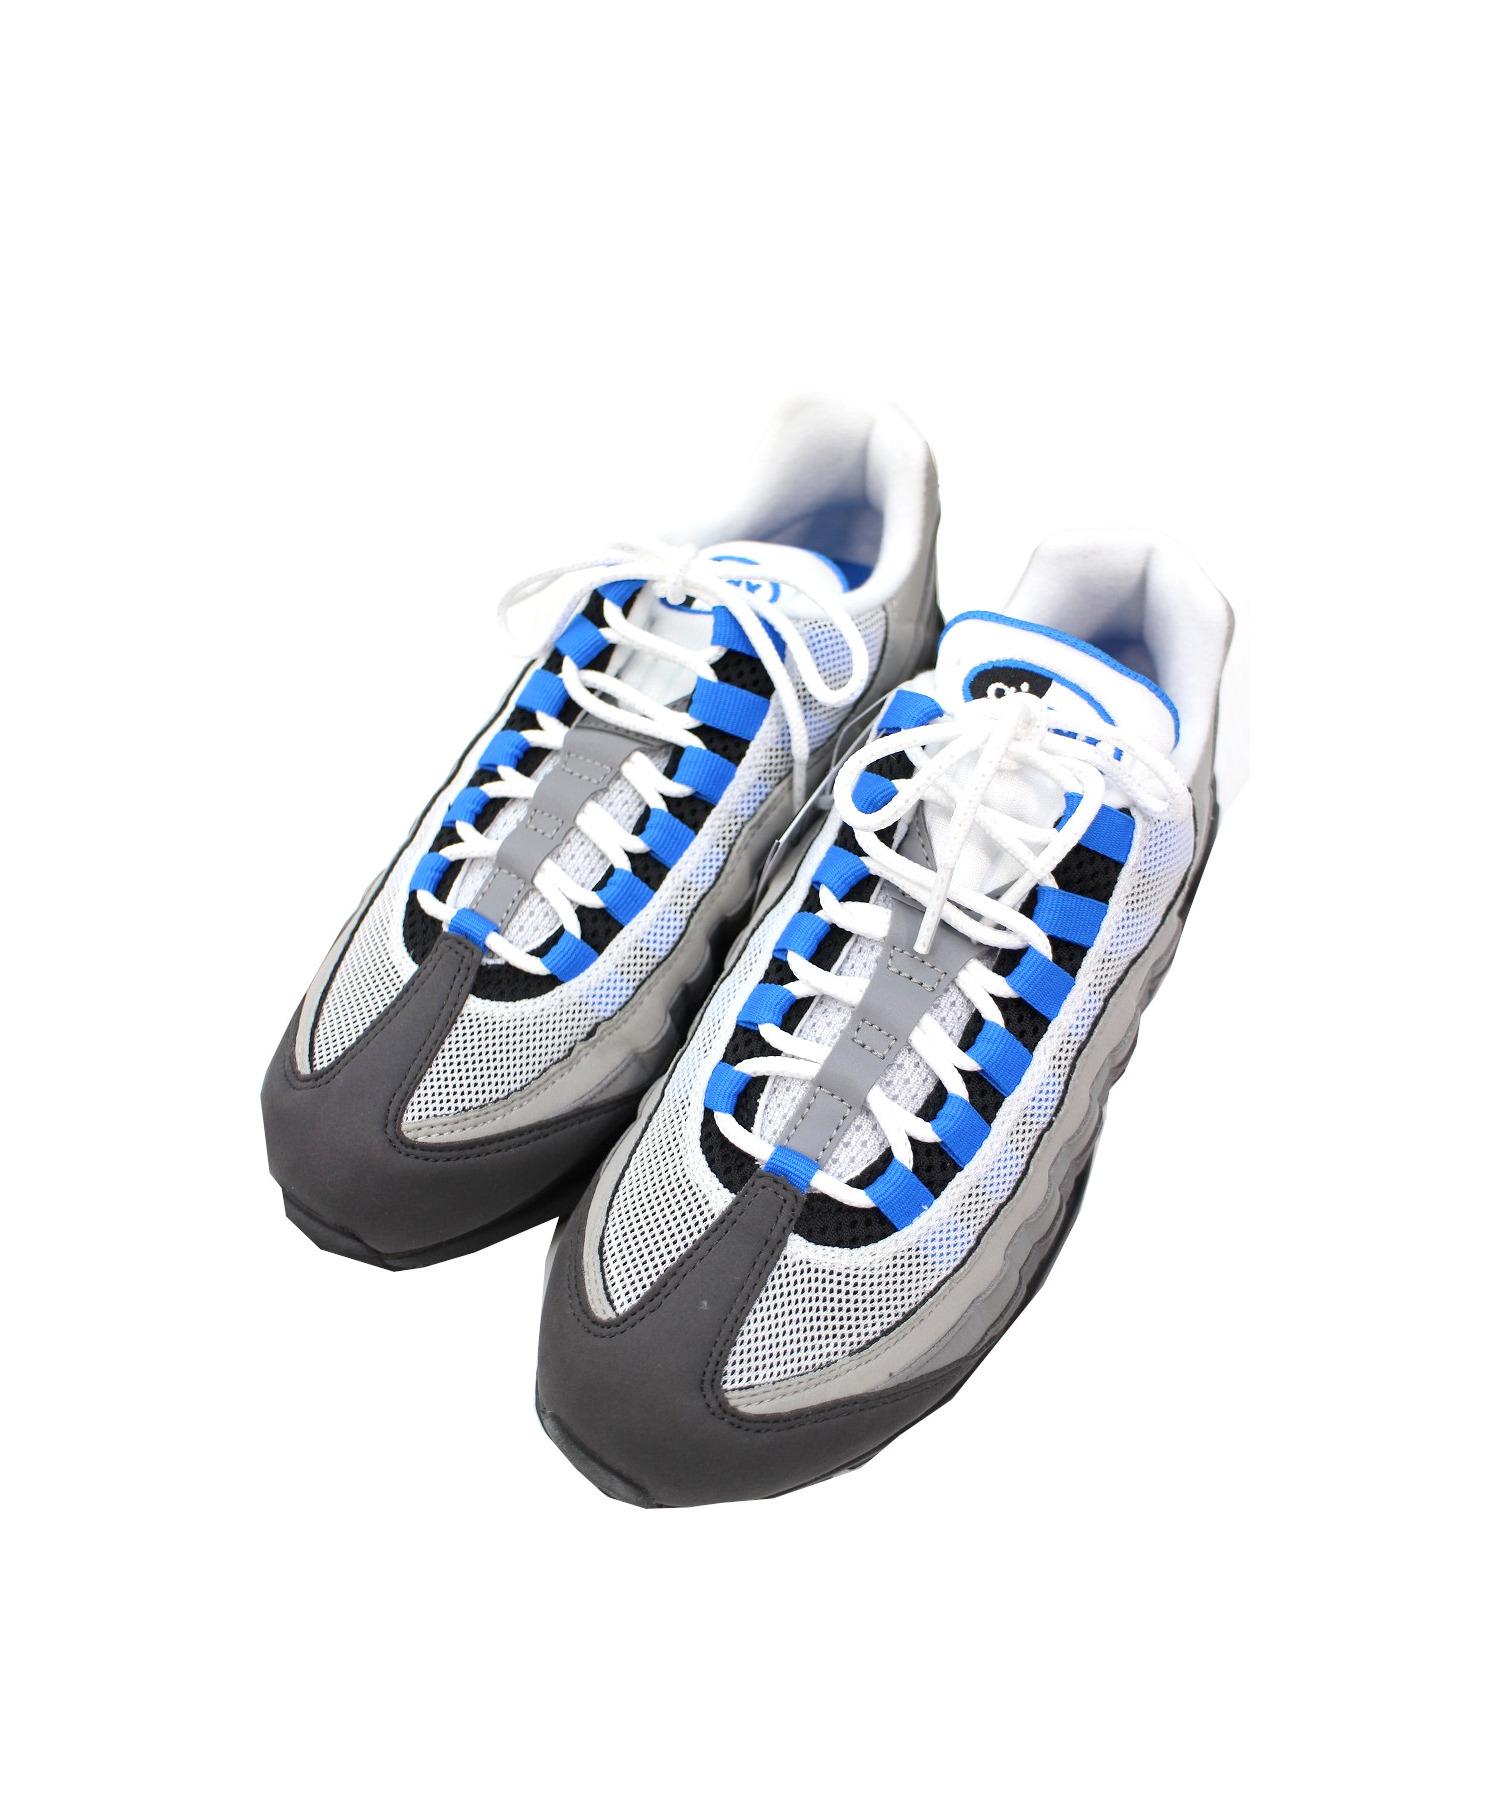 Nike ナイキ メンズ スニーカー 【Nike Kyrie 6】 サイズ US_11(29.0cm